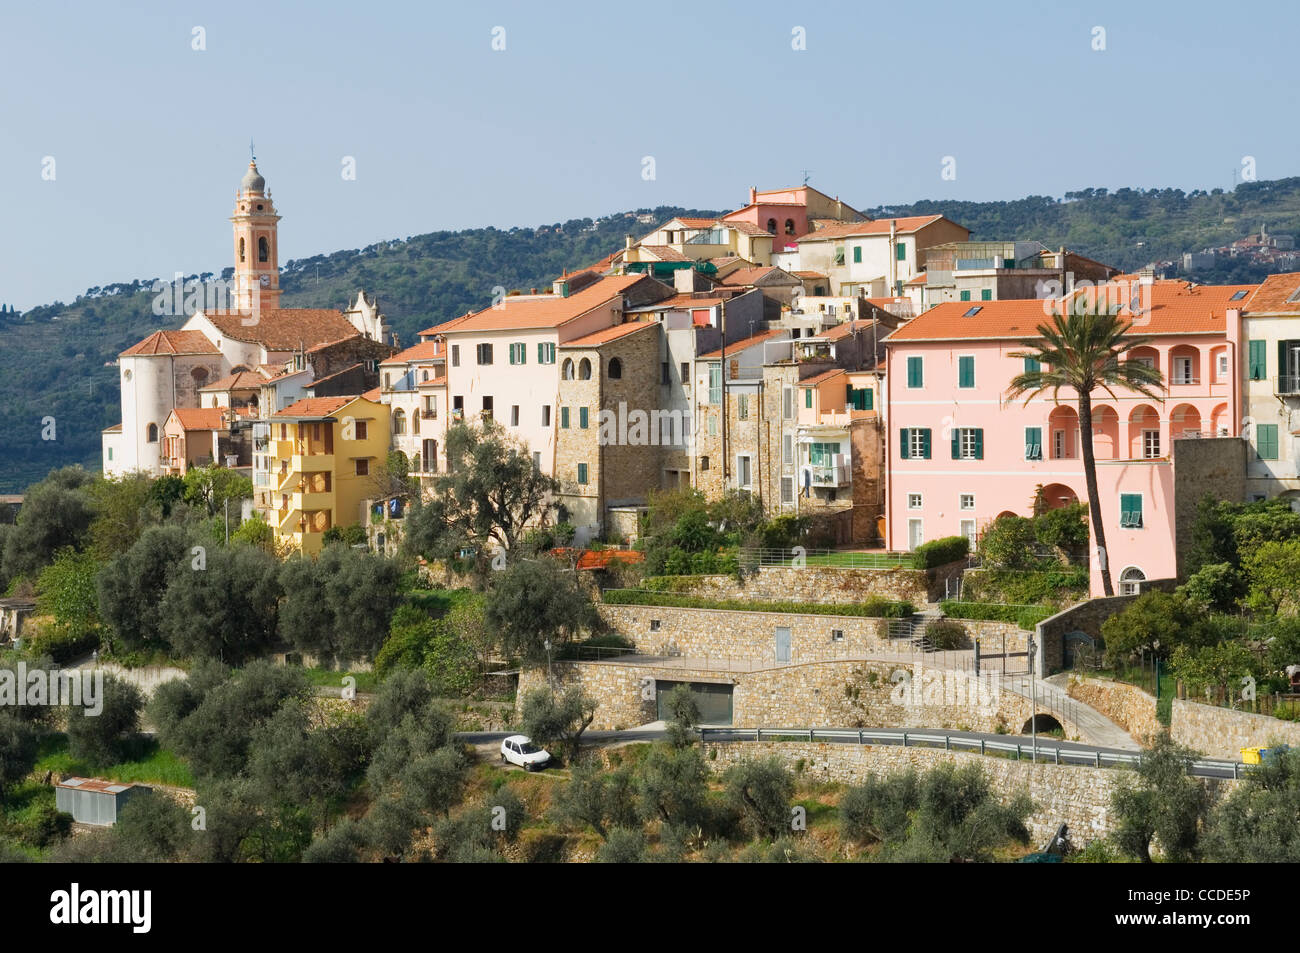 Das malerische italienische Dorf Civezza, Ligurien. Stockfoto